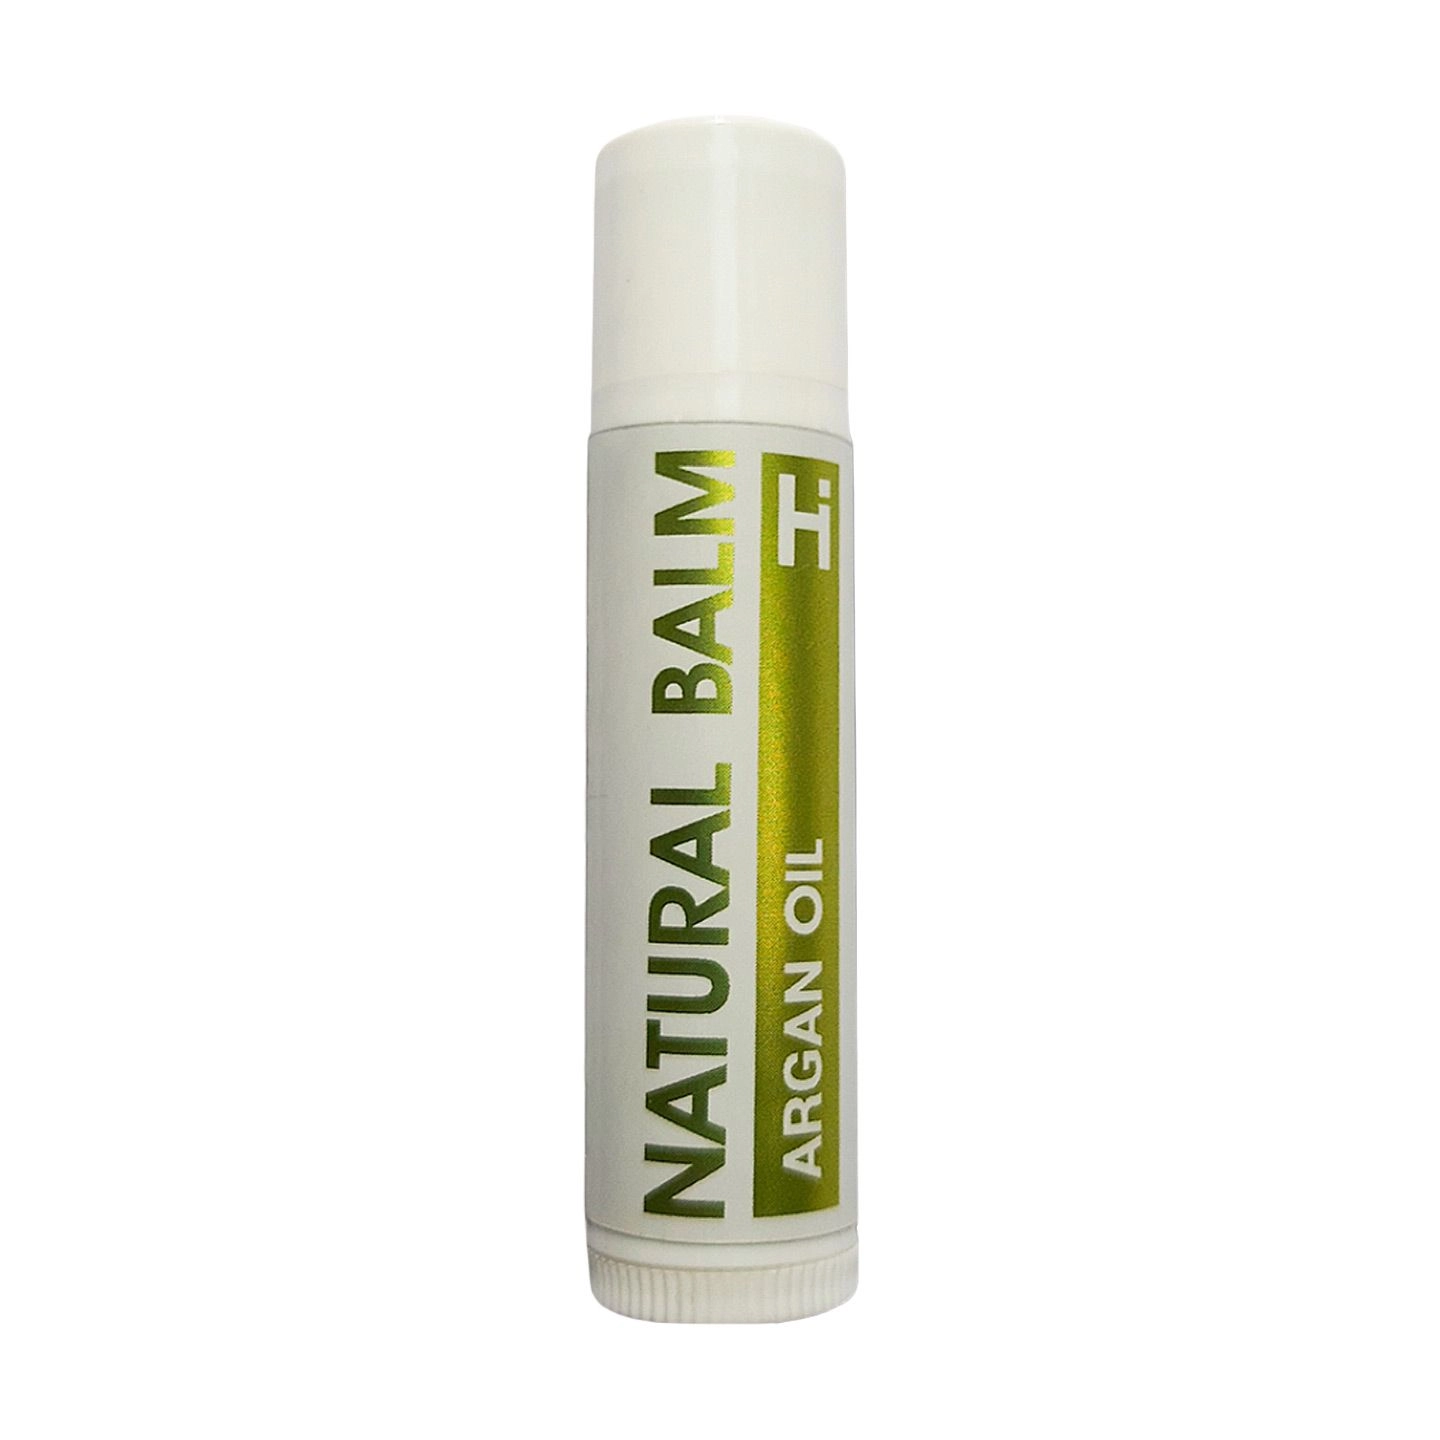 Hillary Защитный бальзам для губ Natural Argana Lip Balm с маслом арганы, 5 г - фото N1